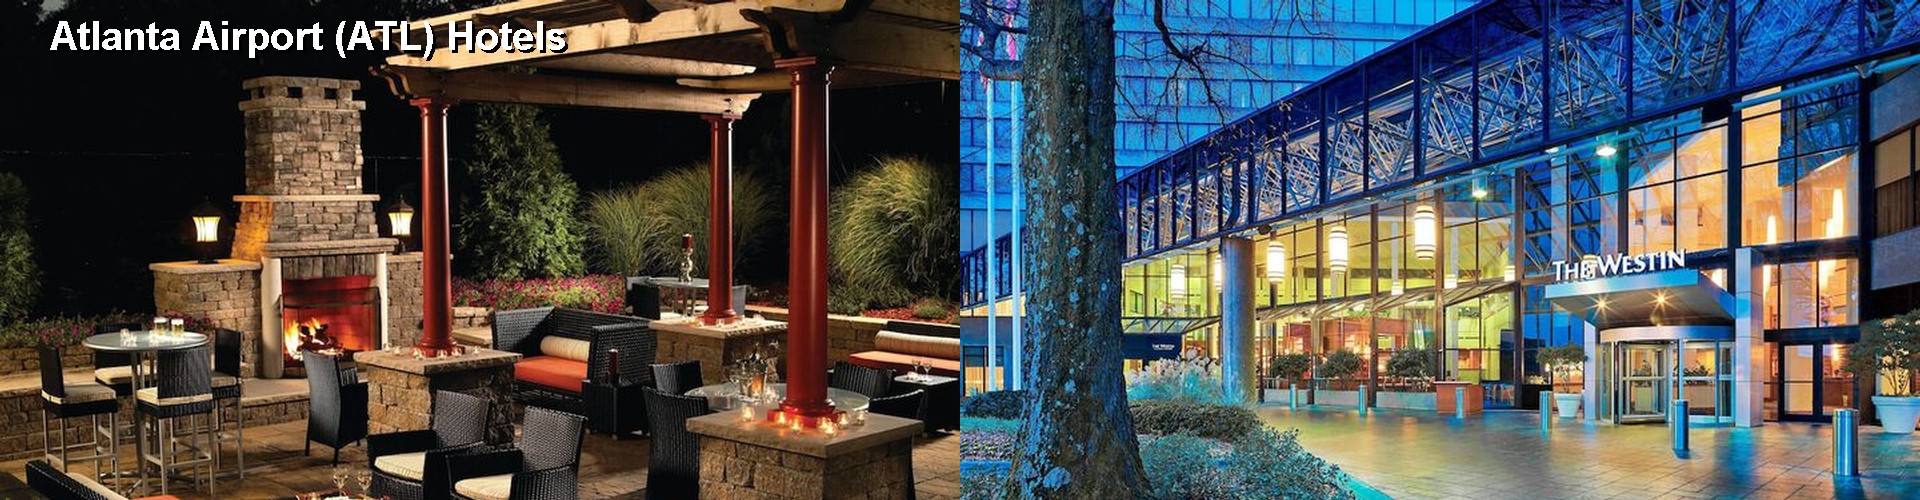 5 Best Hotels near Atlanta Airport (ATL)